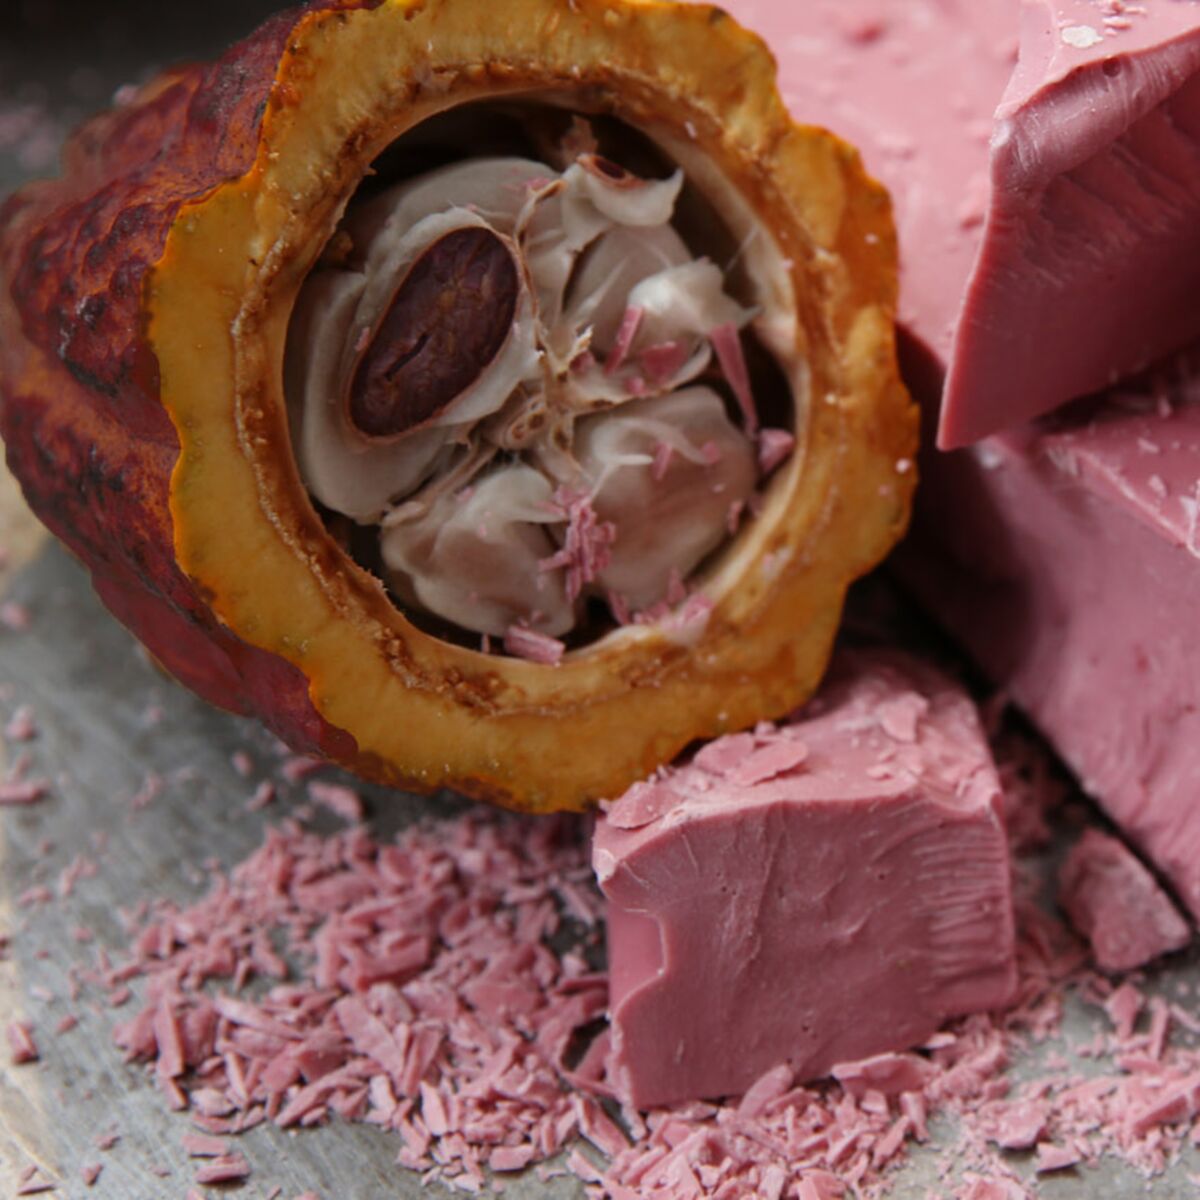 Découverte du chocolat ruby : le mystère derrière sa couleur rose